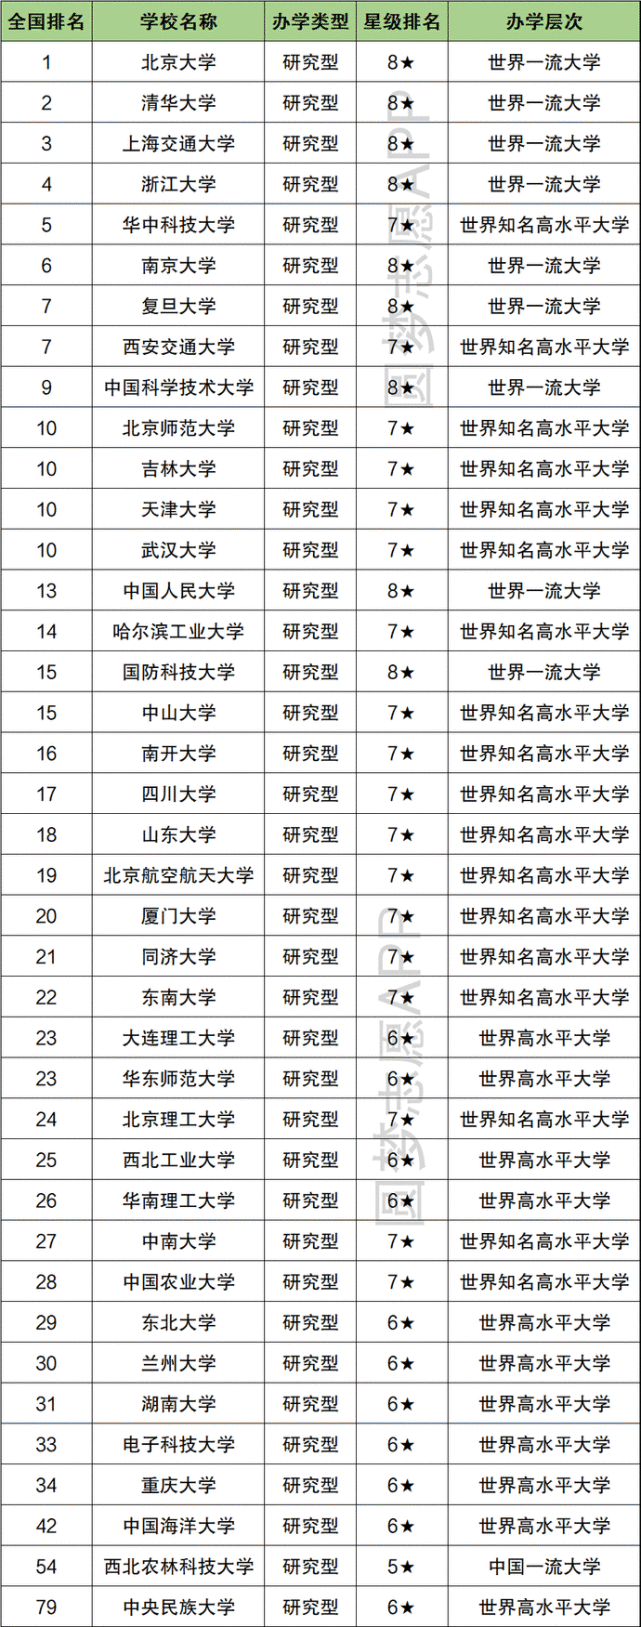 正文 根据校友会2021中国985工程大学排名,2021全国985学校排名顺序